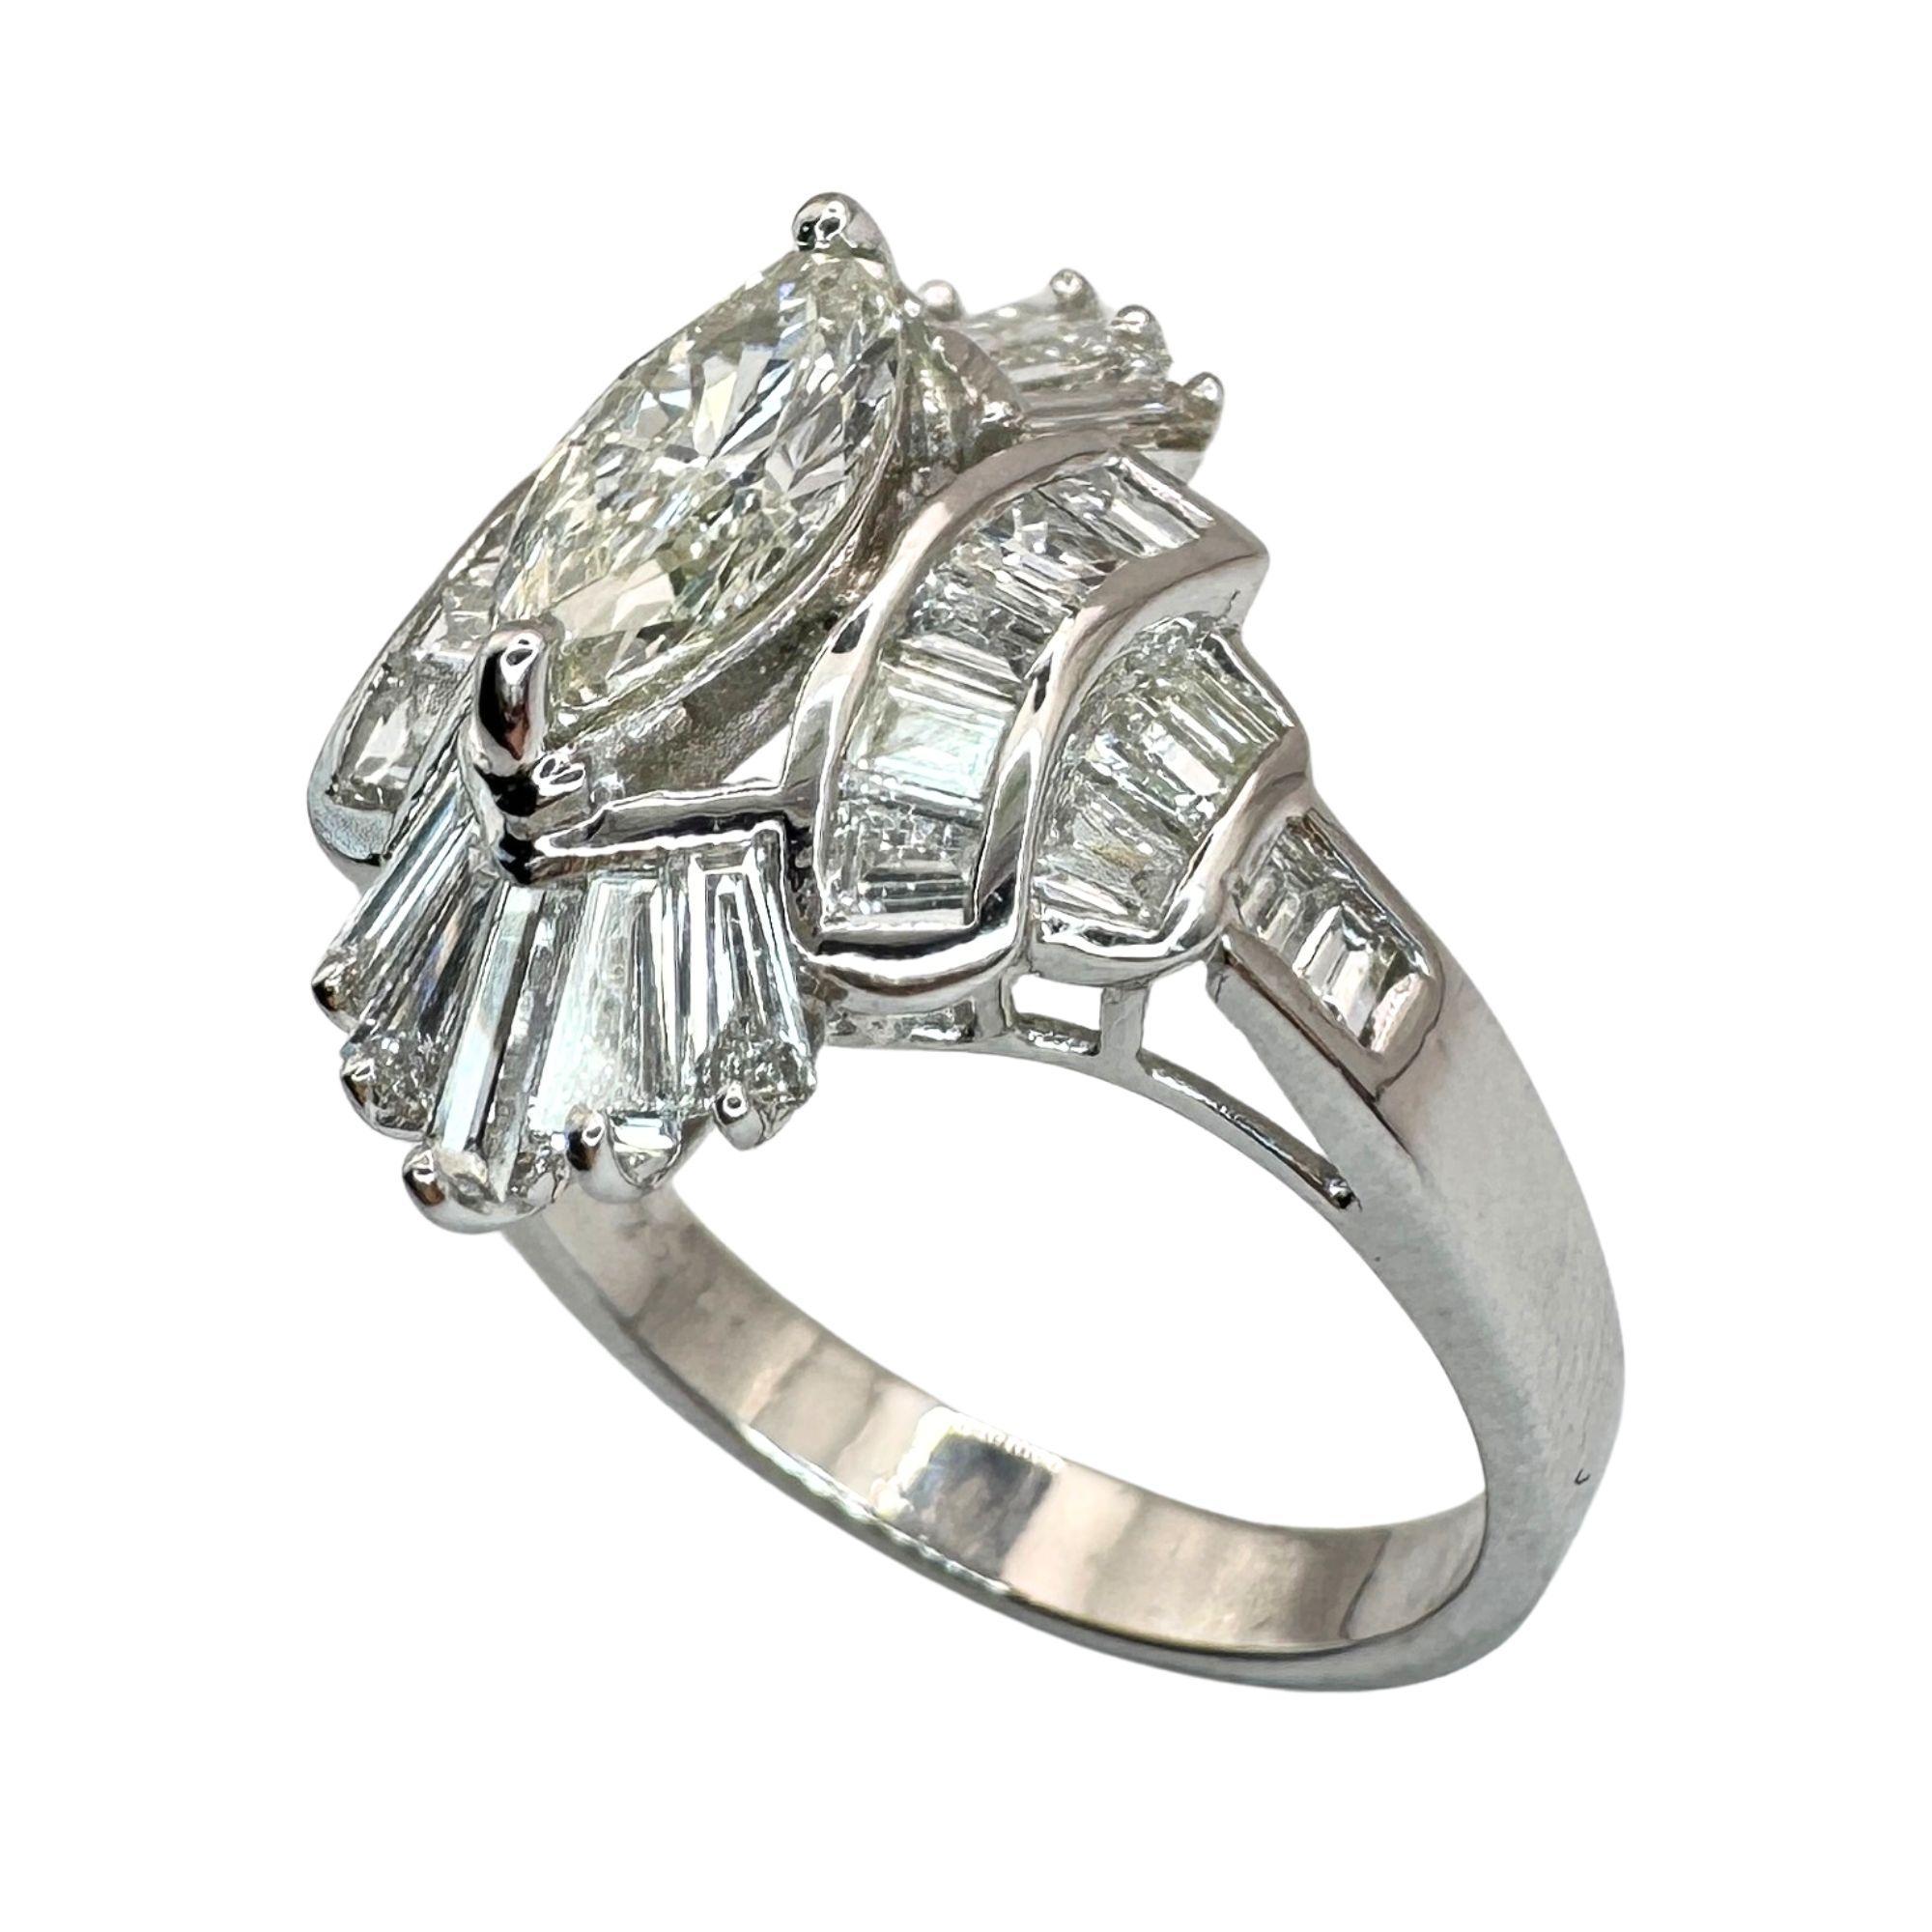 Dieser 18-karätige Navette-Ring mit Baguette- und Marquise-Schliff strahlt mit seinem raffinierten Design und 1,79 Karat schillernden Diamanten Eleganz und Luxus aus. Der aus 18 Karat Weißgold gefertigte Ring ist mit 